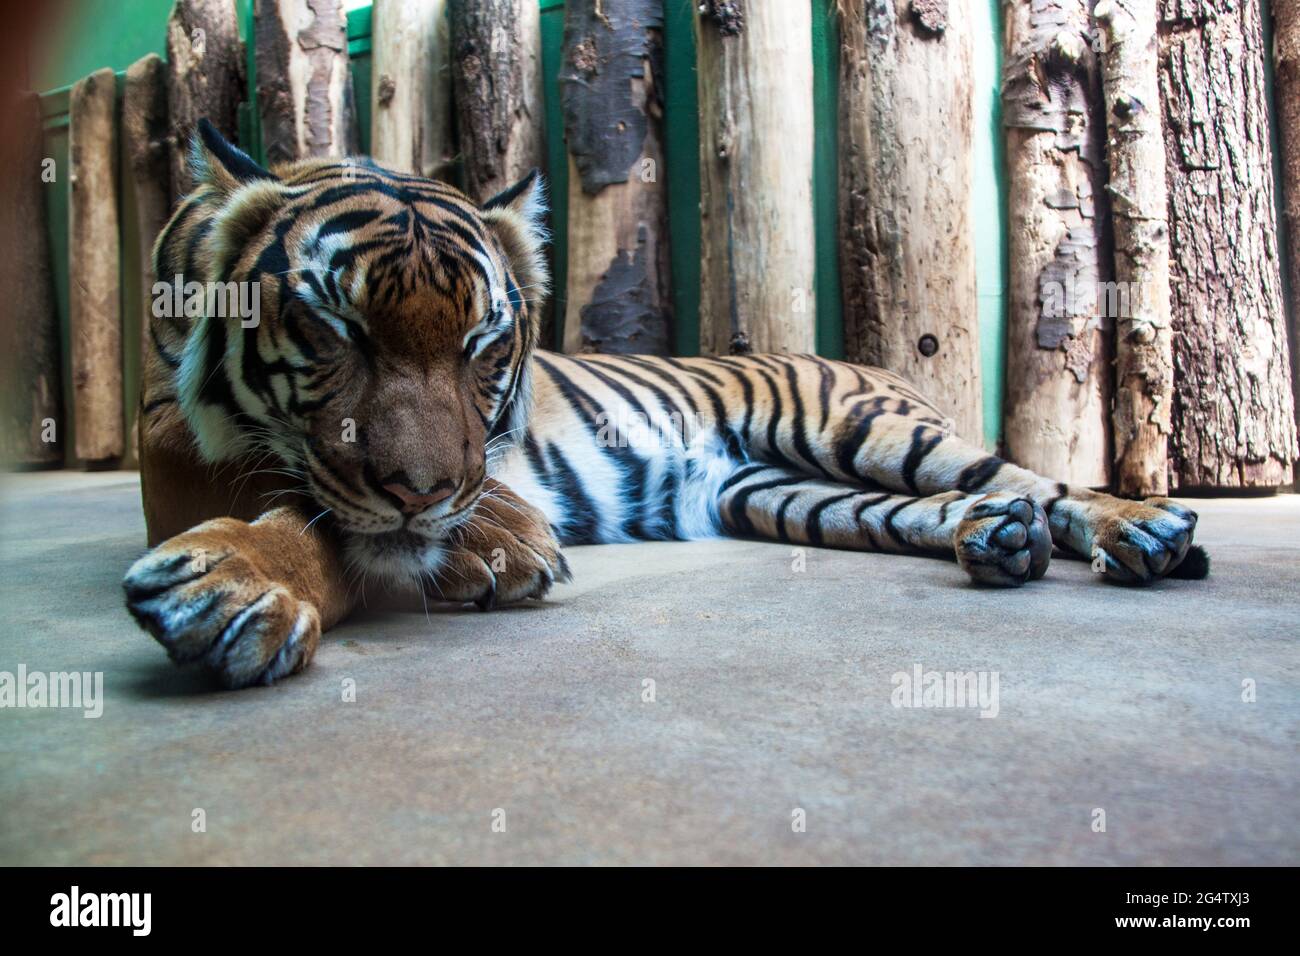 Sumatran tiger (Panthera tigris sumatrae) in Prague zoo Stock Photo